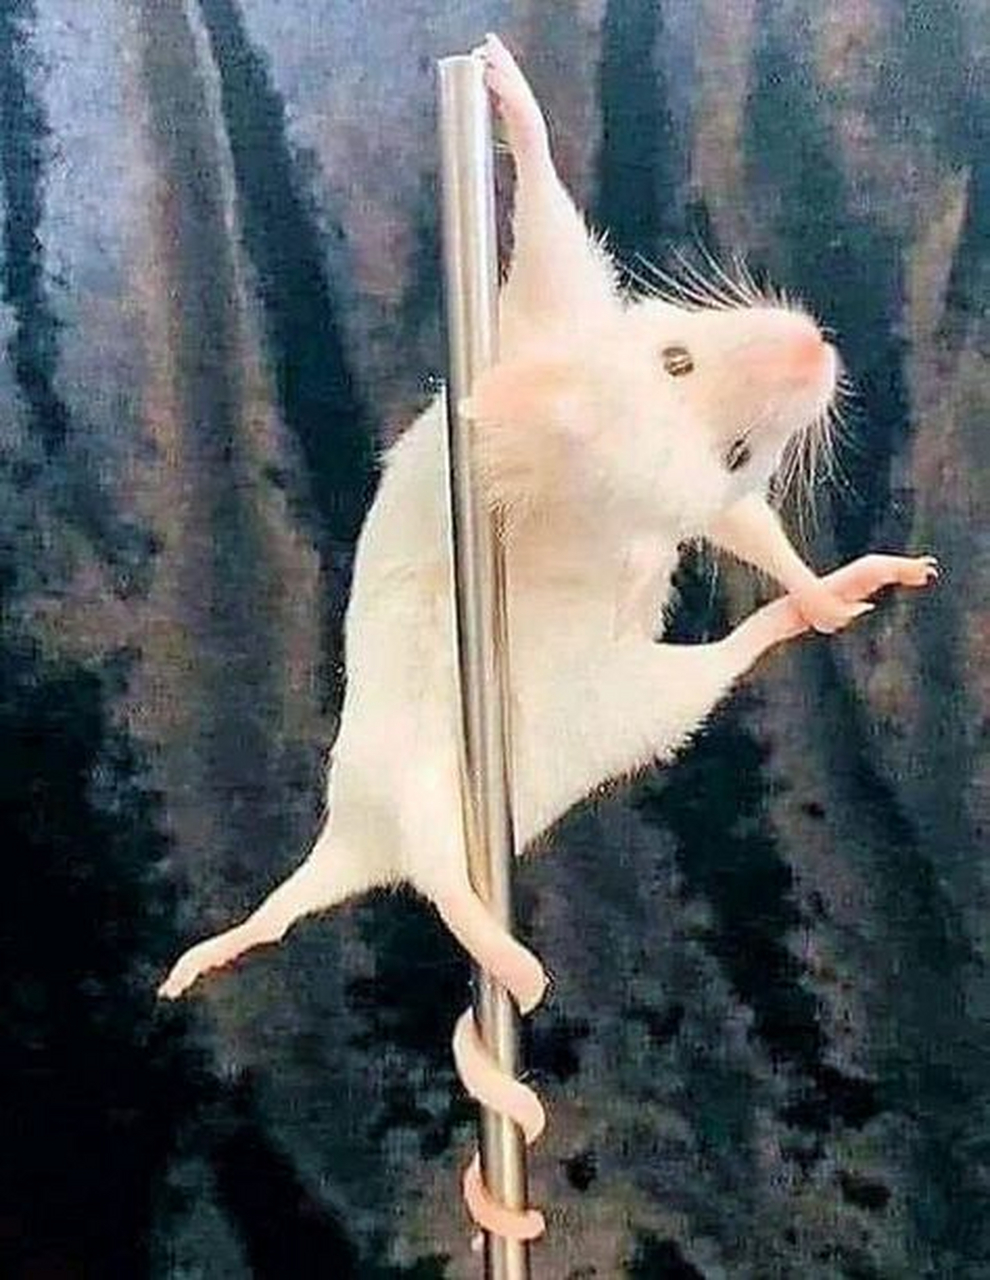 起懵了,看到一只鼠在跳钢管舞 还挺妖娆